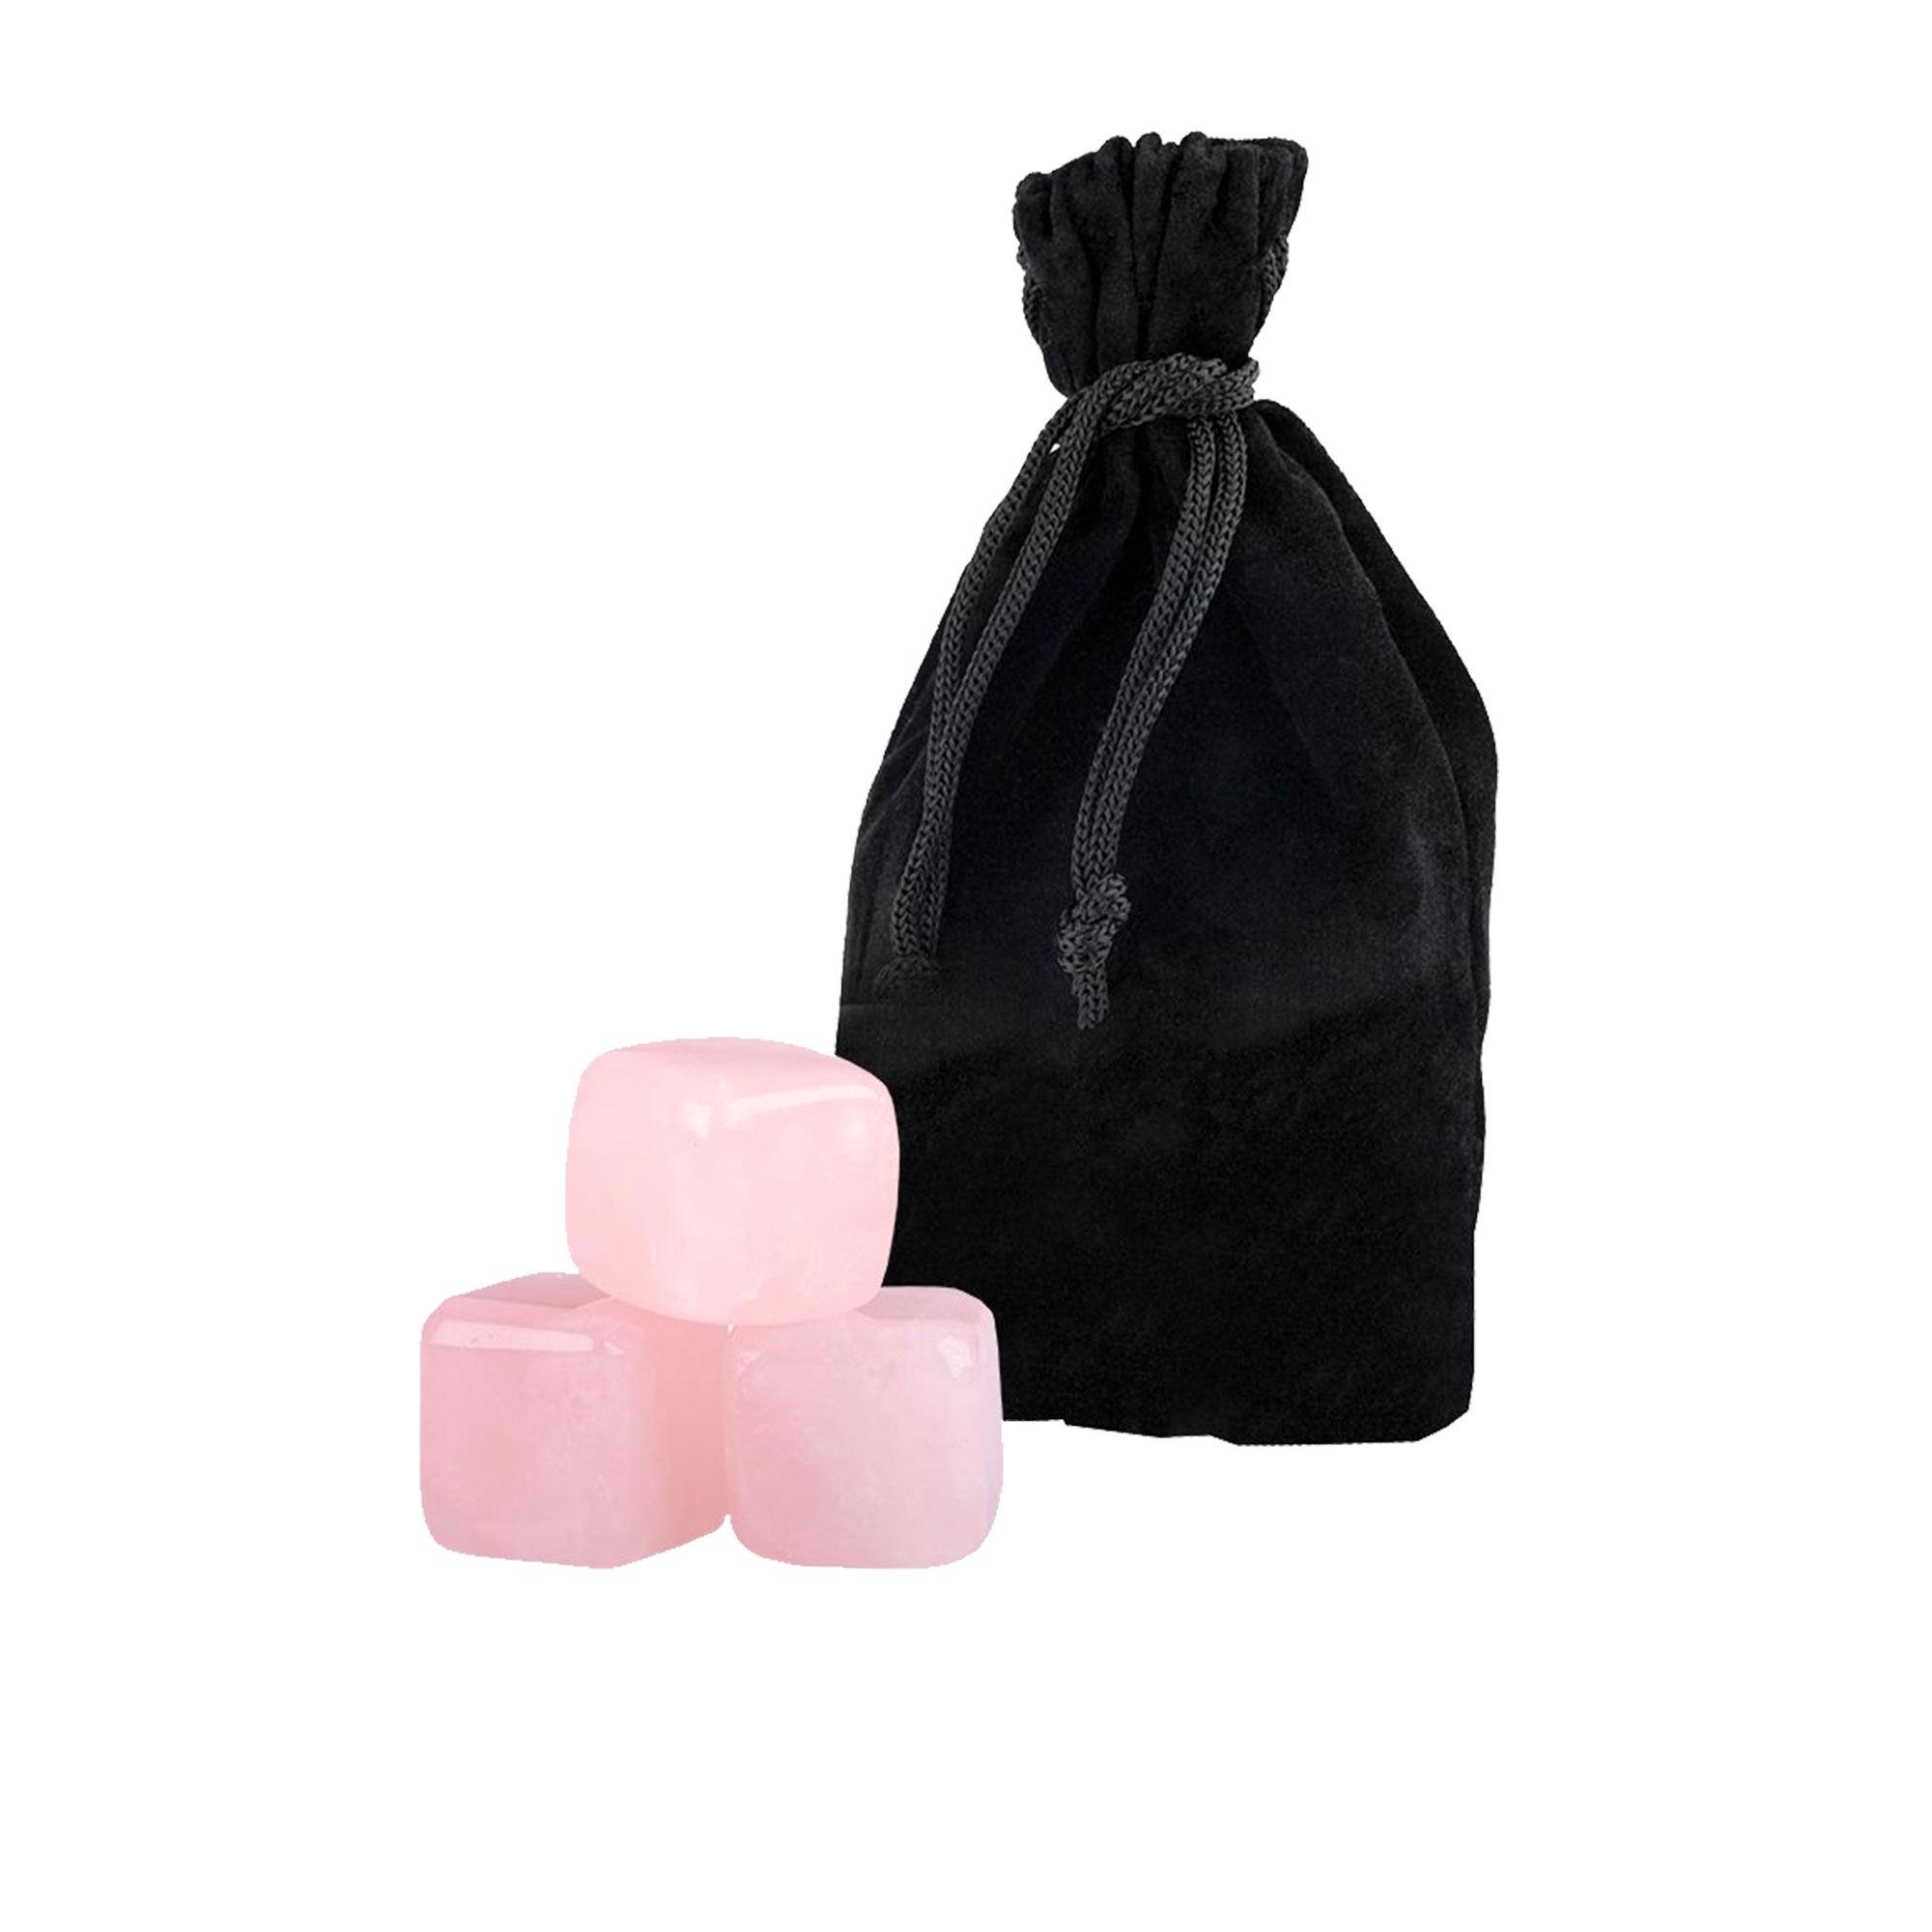 Bartender Rose Quartz Gin Stones with Bag Set of 6 Pink Image 1